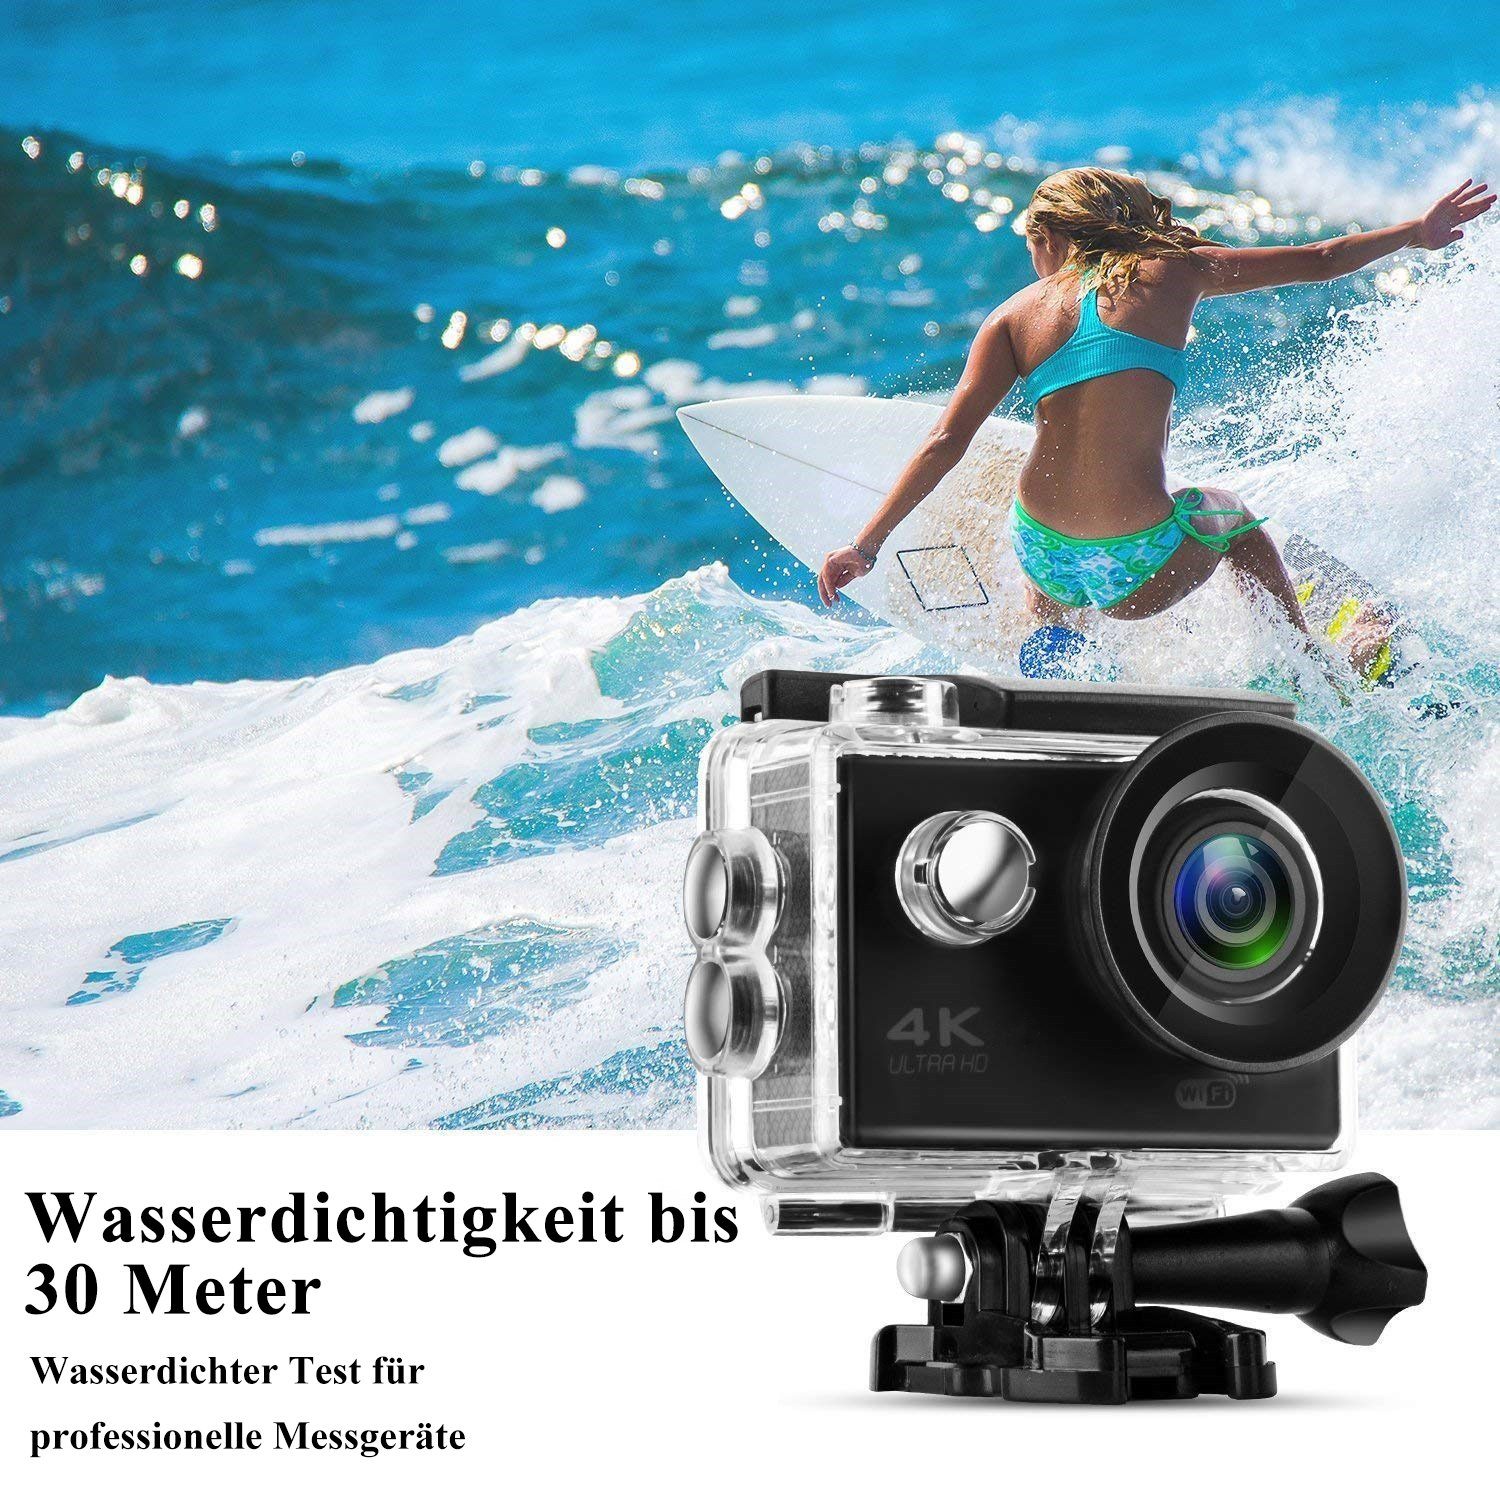 WLAN 170 Weitwinkel KIKAKO HD-Kamera Unterwasser Videokamera 20MP Sportkamera (Wi-Fi) (HD, WKamera, 4K